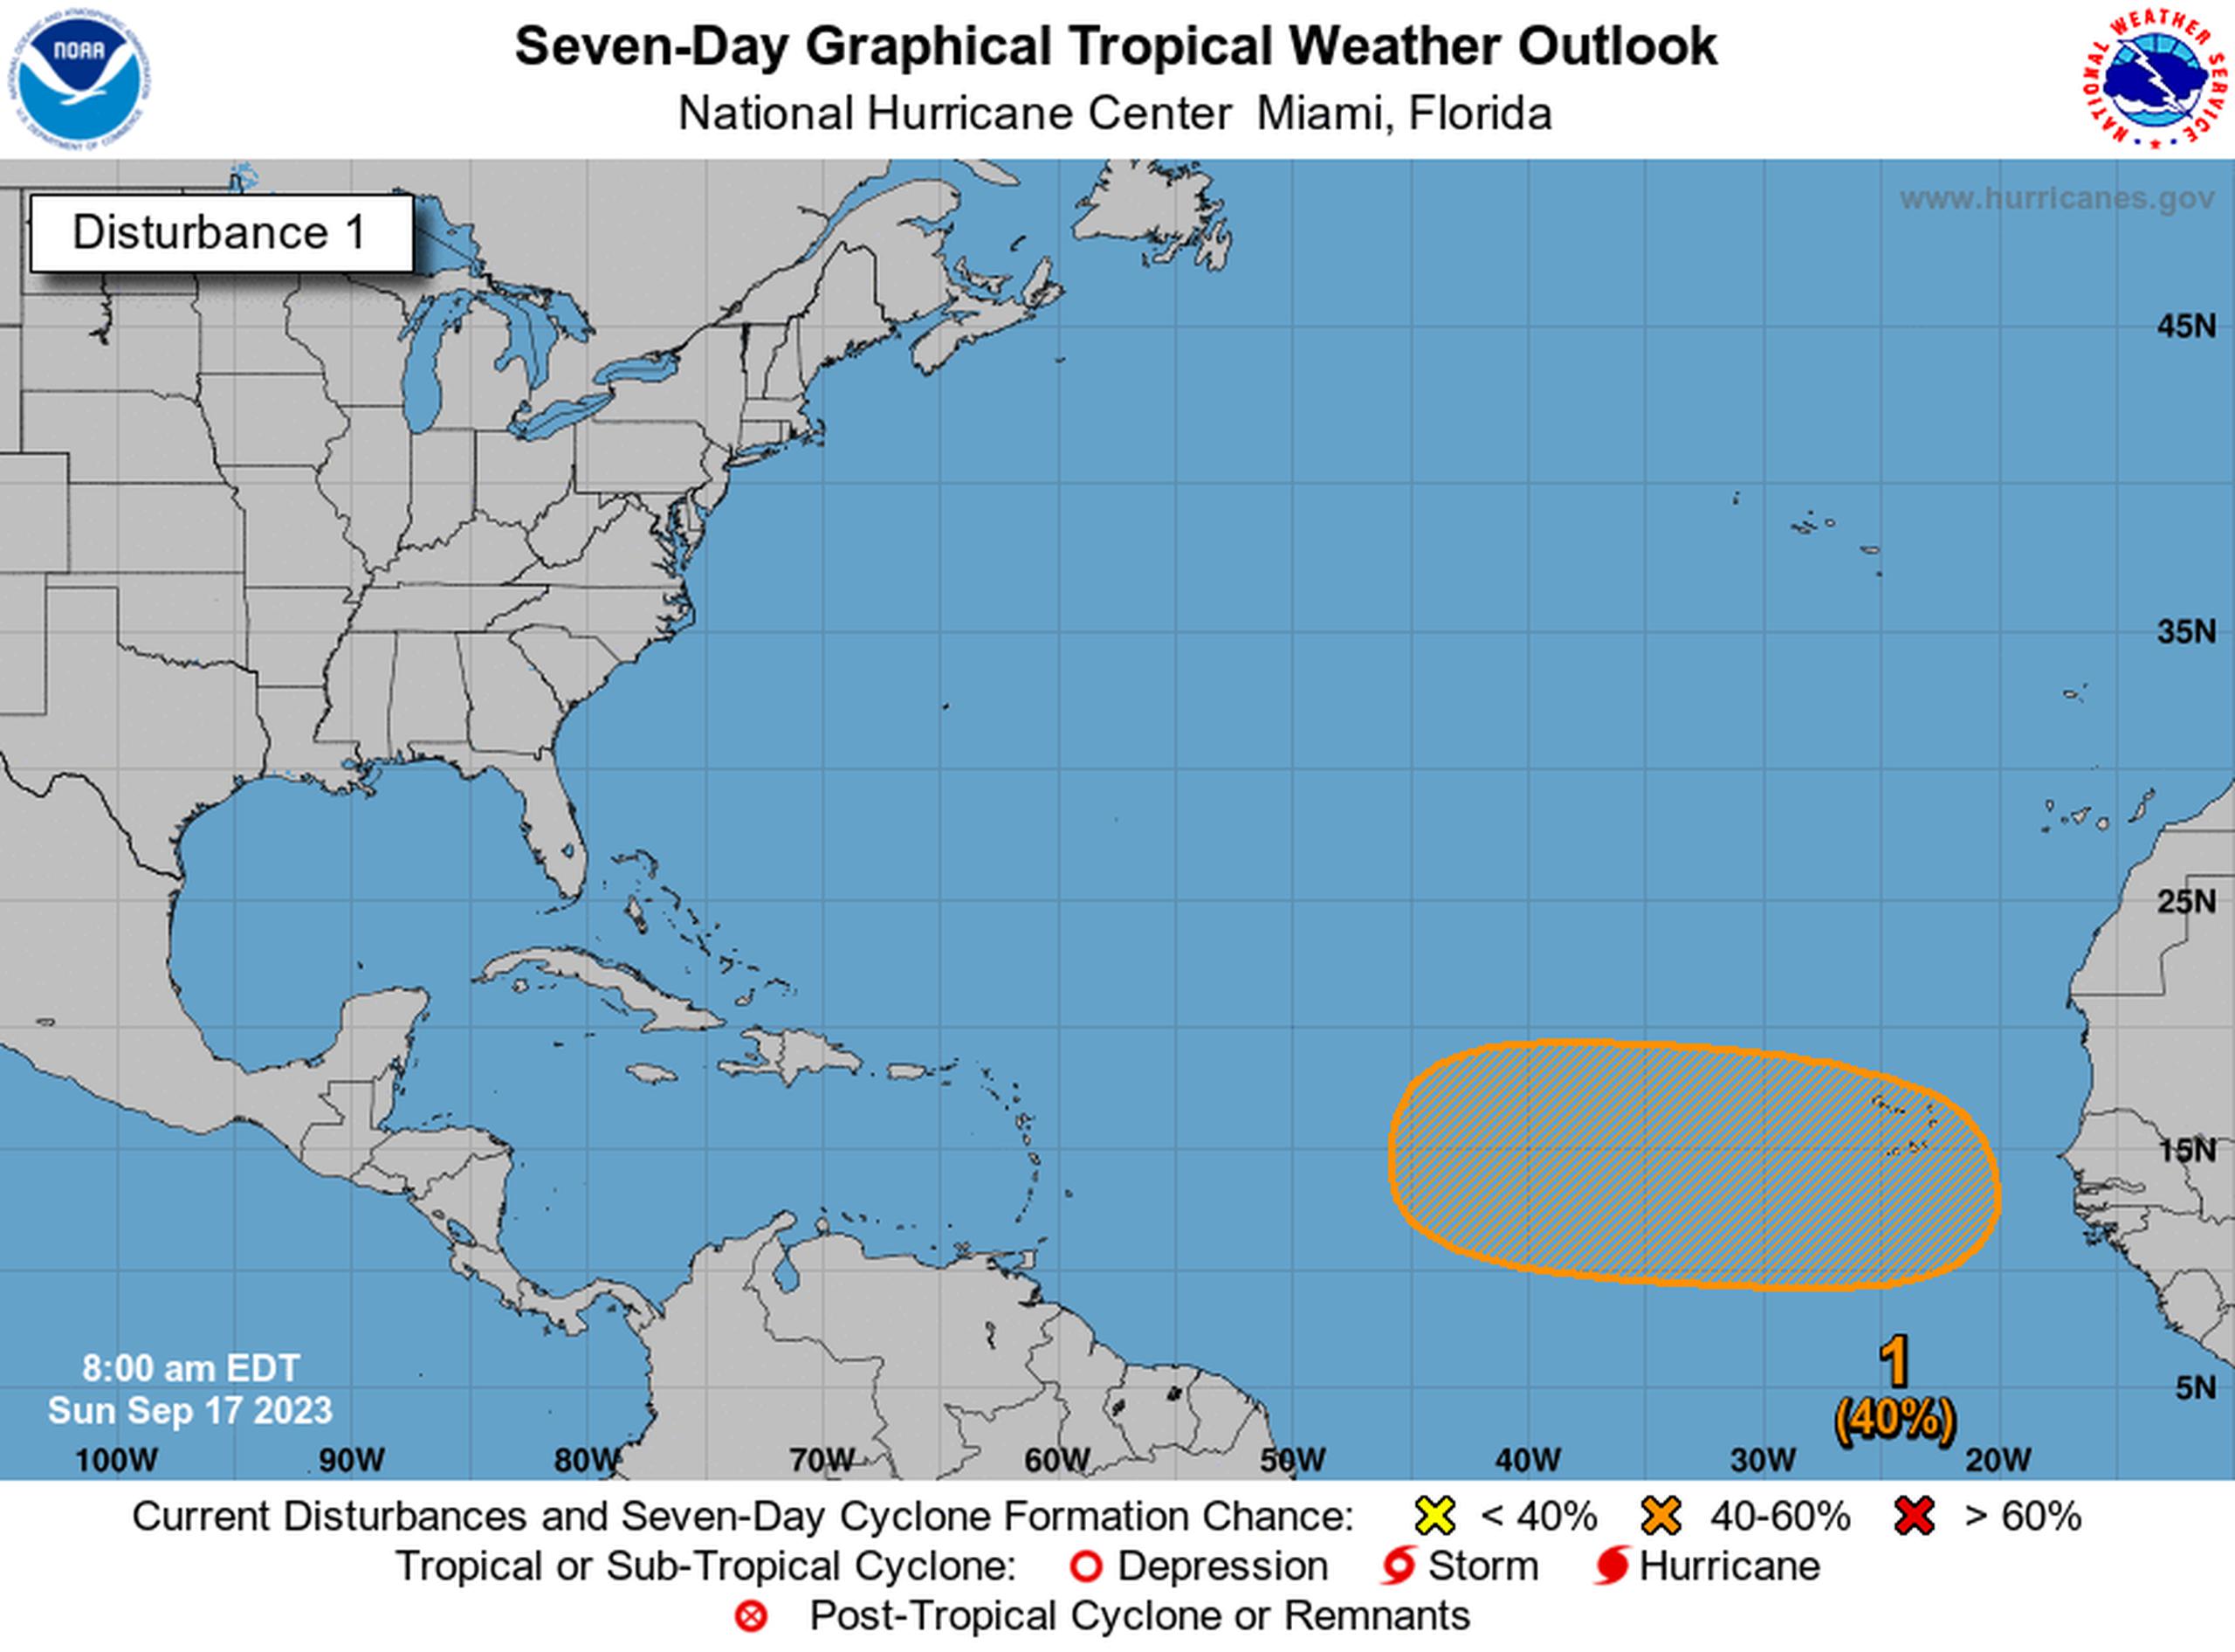 Una onda tropical pudiera desarrollarse en esta zona a finales de esta semana.